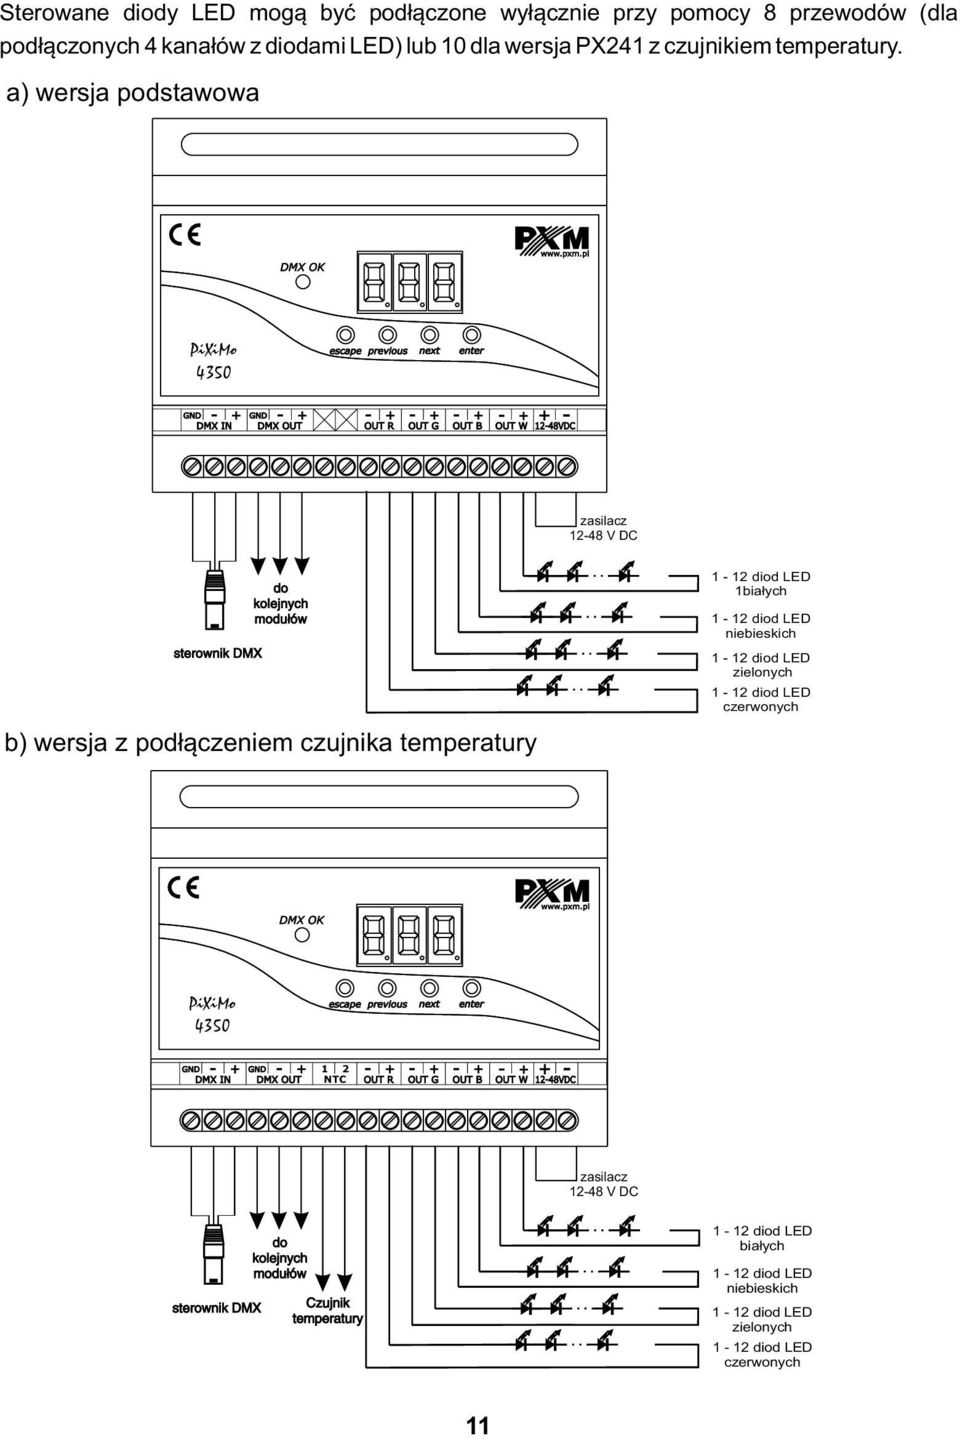 a) wersja podstawowa PiXiMo 4350 zasilacz 12-48 V DC sterownik DMX do kolejnych modułów b) wersja z podłączeniem czujnika temperatury 1-12 diod LED